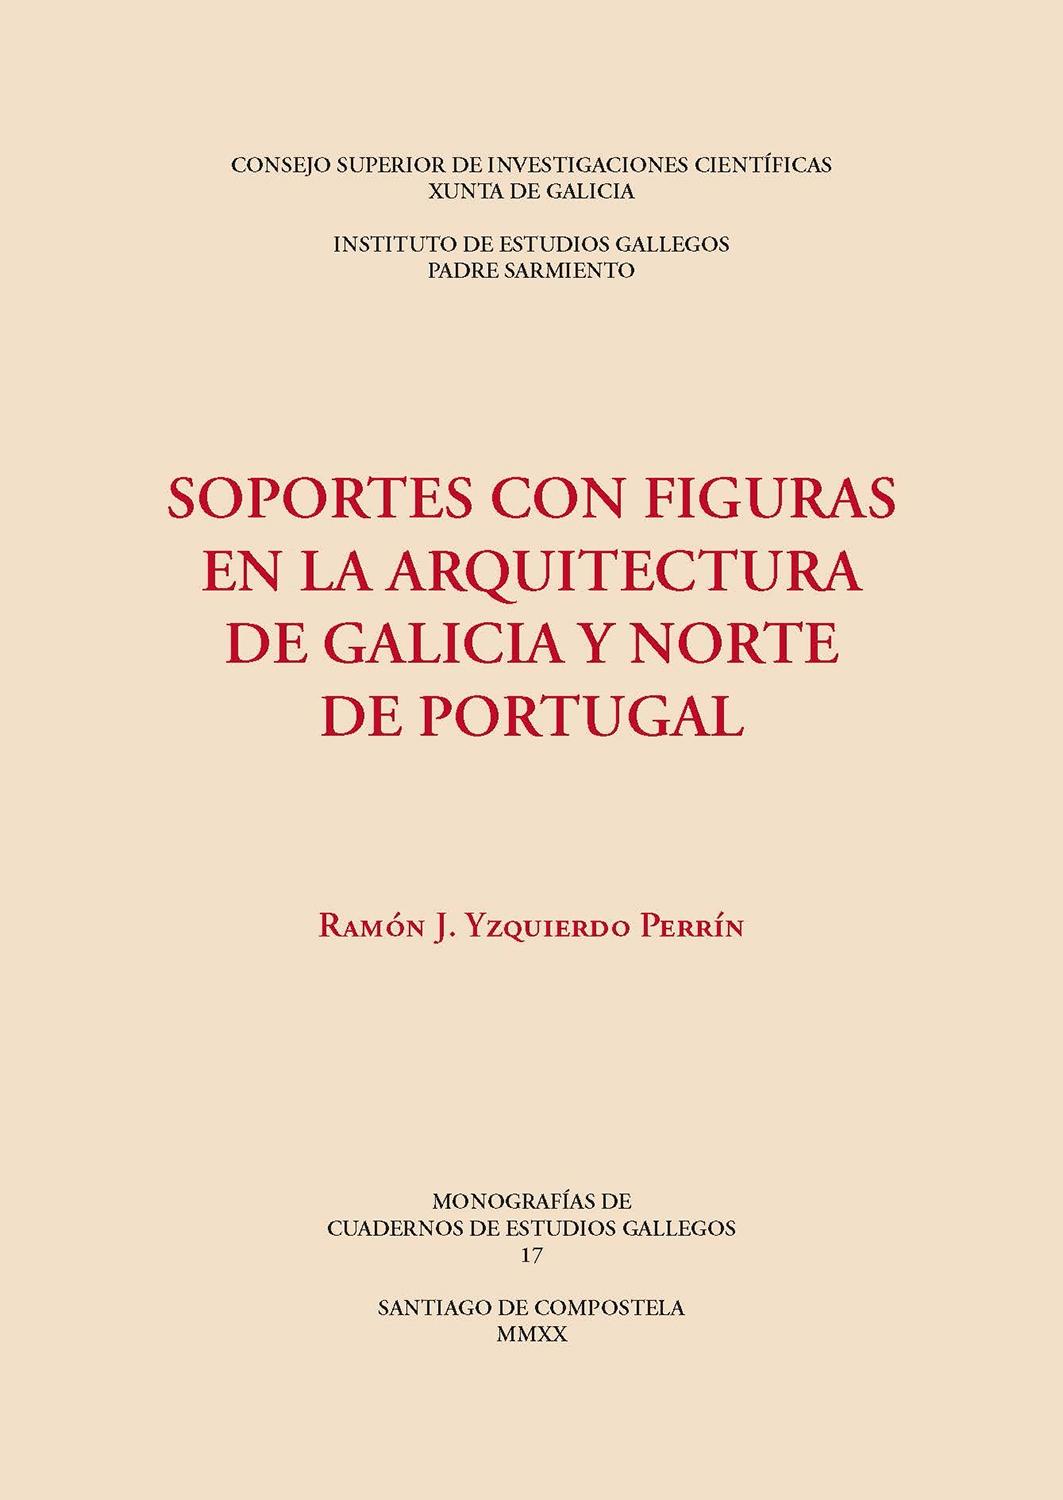 SOPORTES CON FIGURAS EN LA ARQUITECTURA DE GALICIA Y NORTE DE PORTUGAL